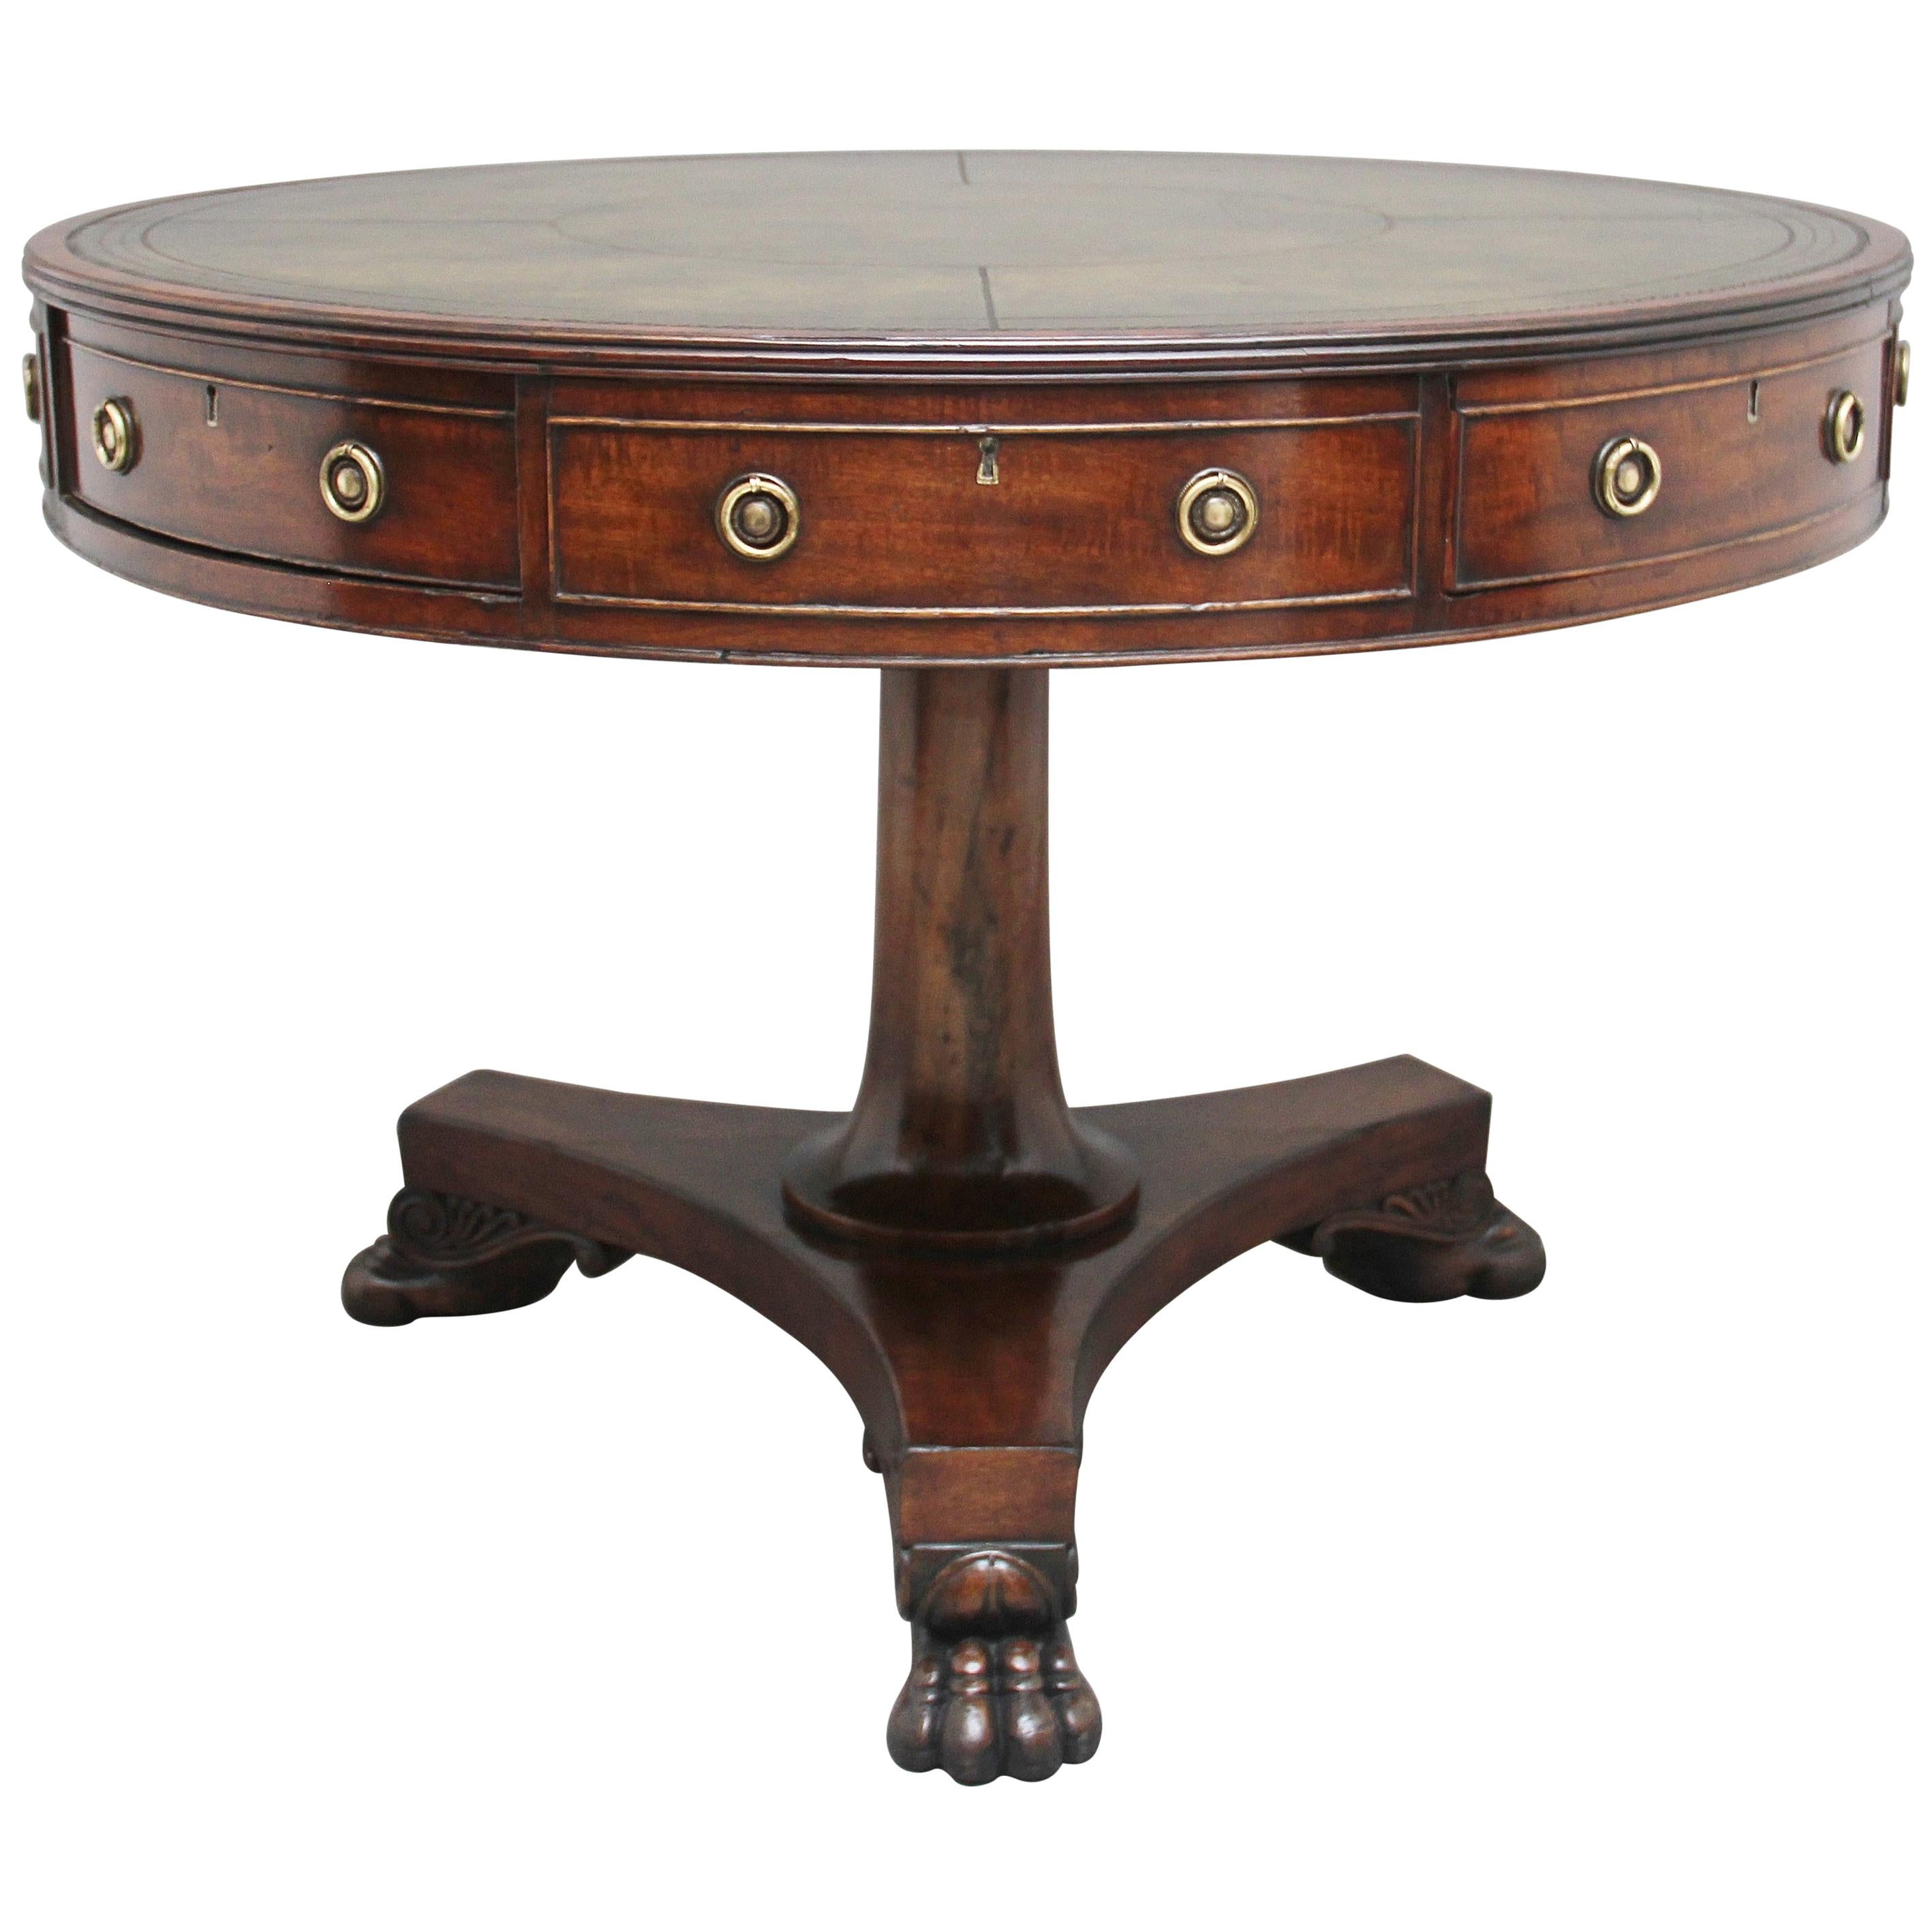 Early 19th Century Mahogany Drum Table